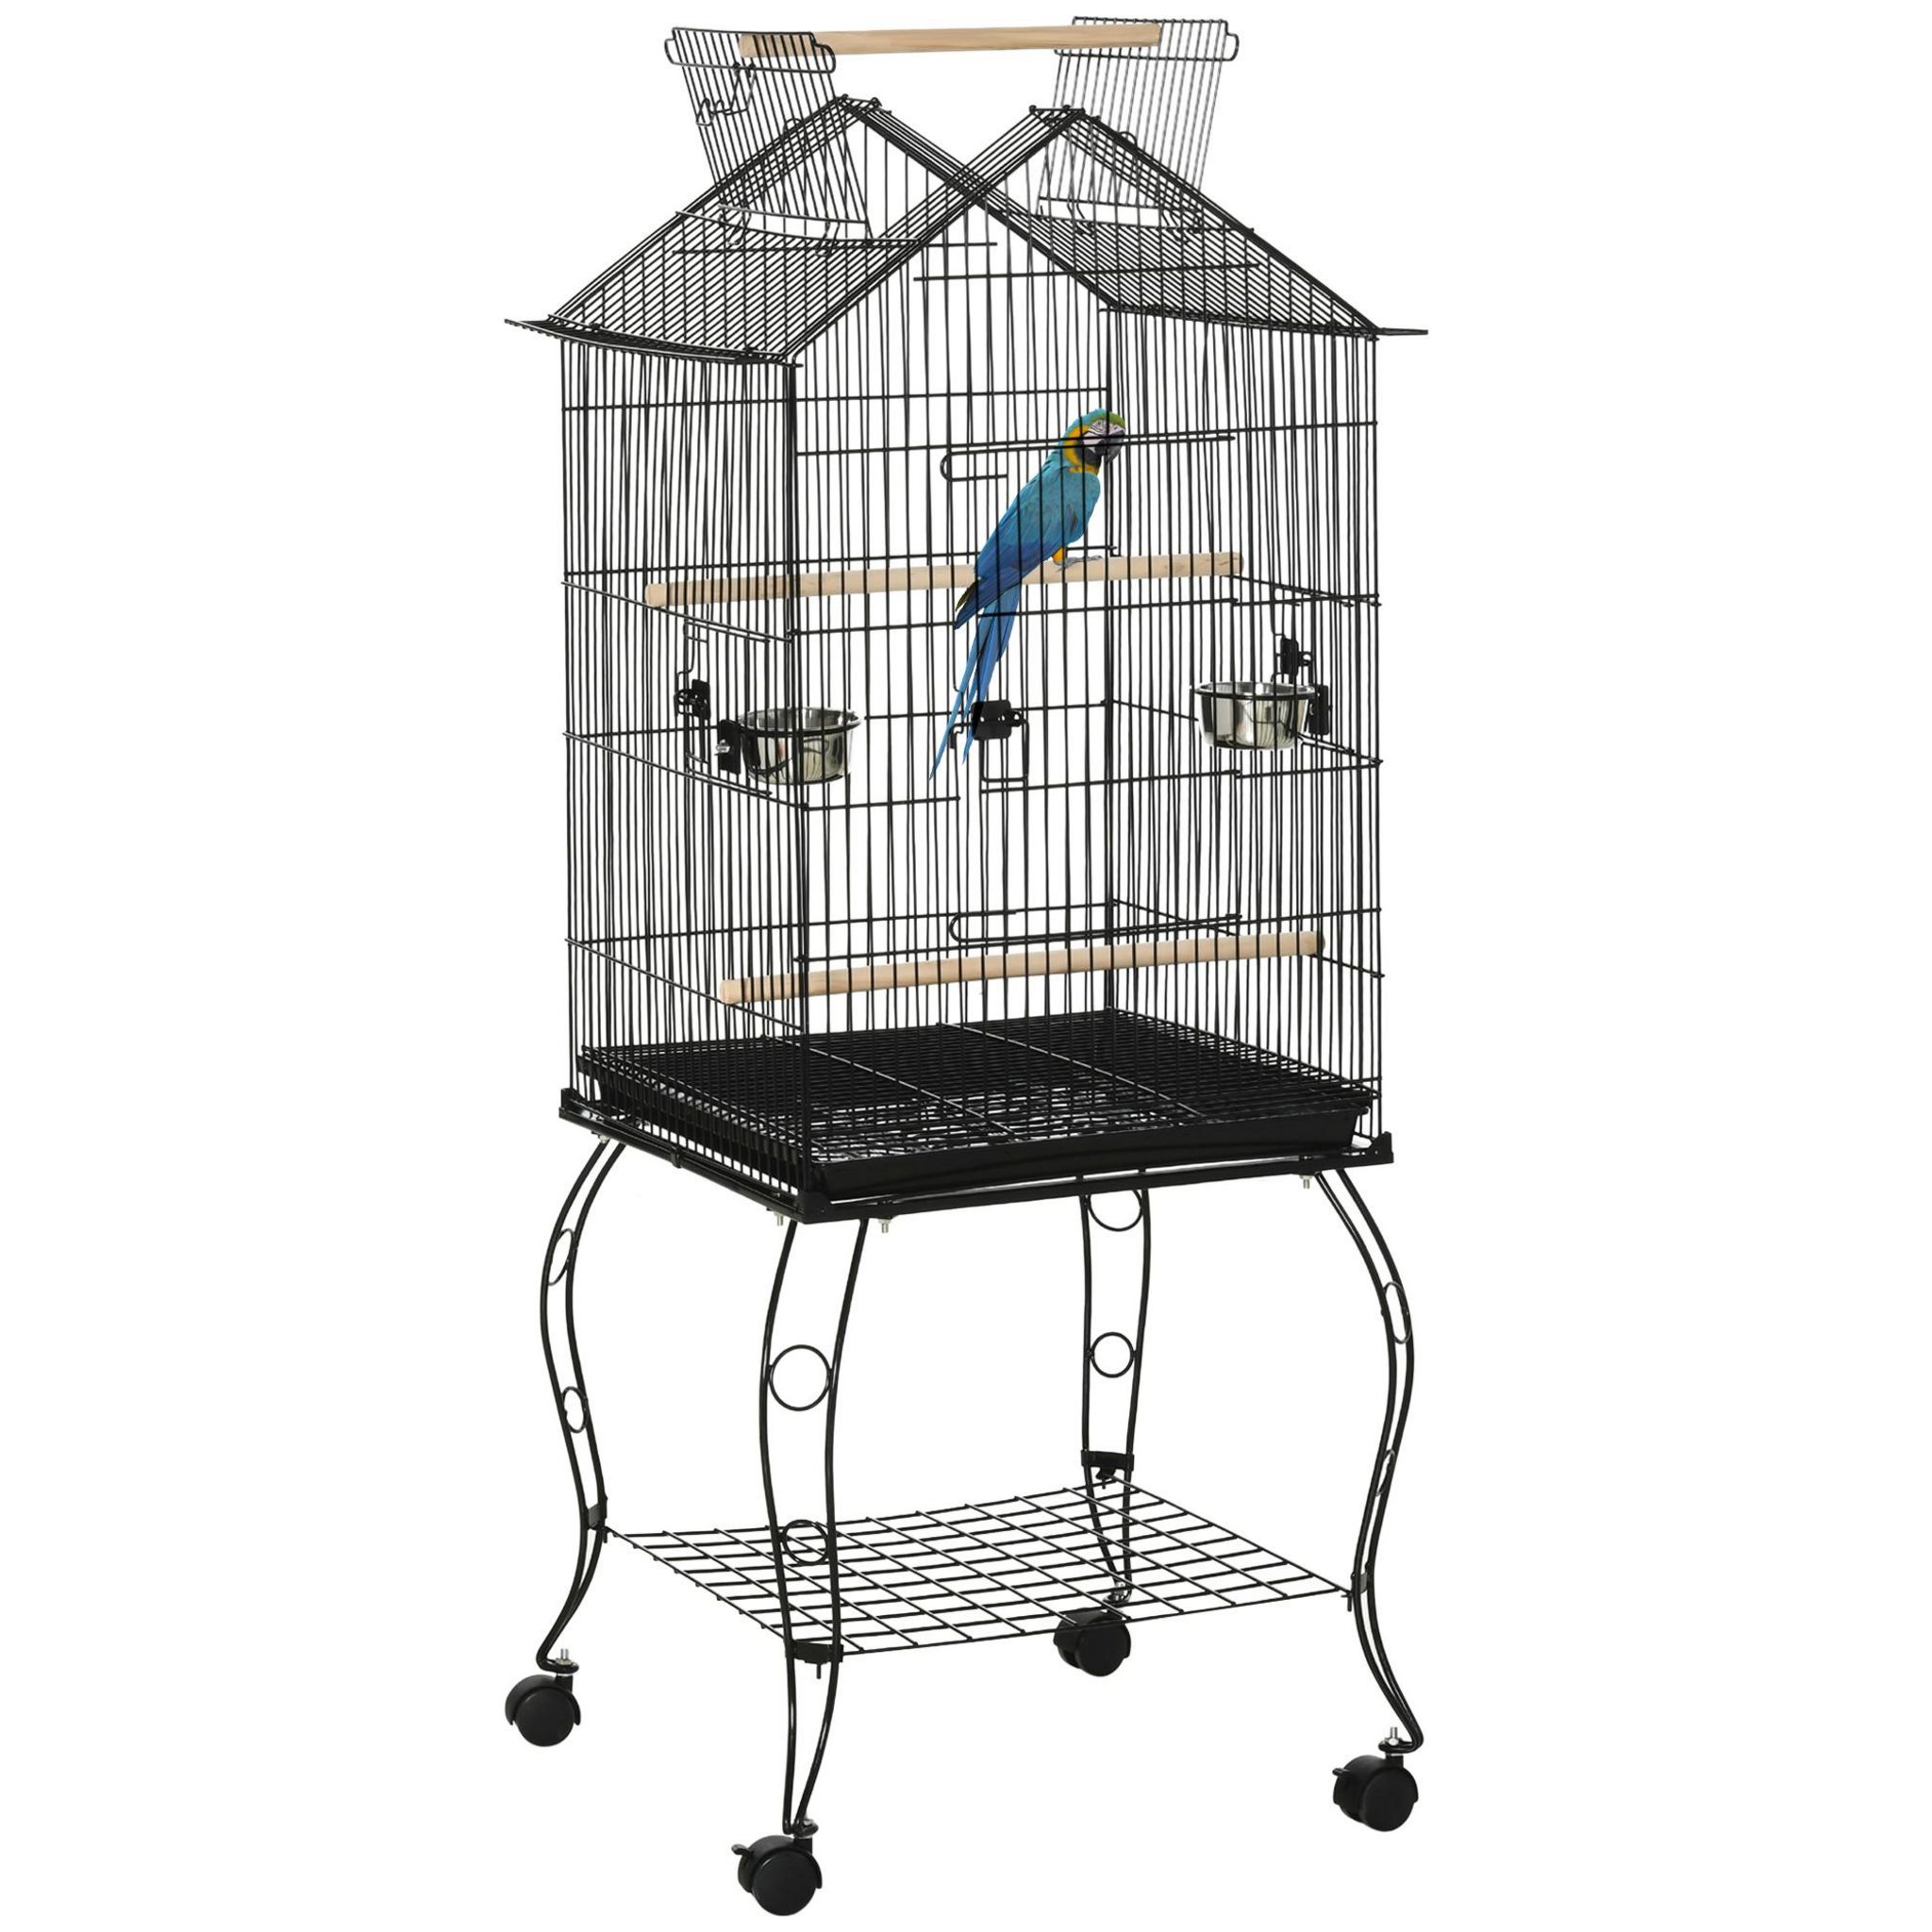 Support Trépied pour Cages à Oiseaux : 29,50 €